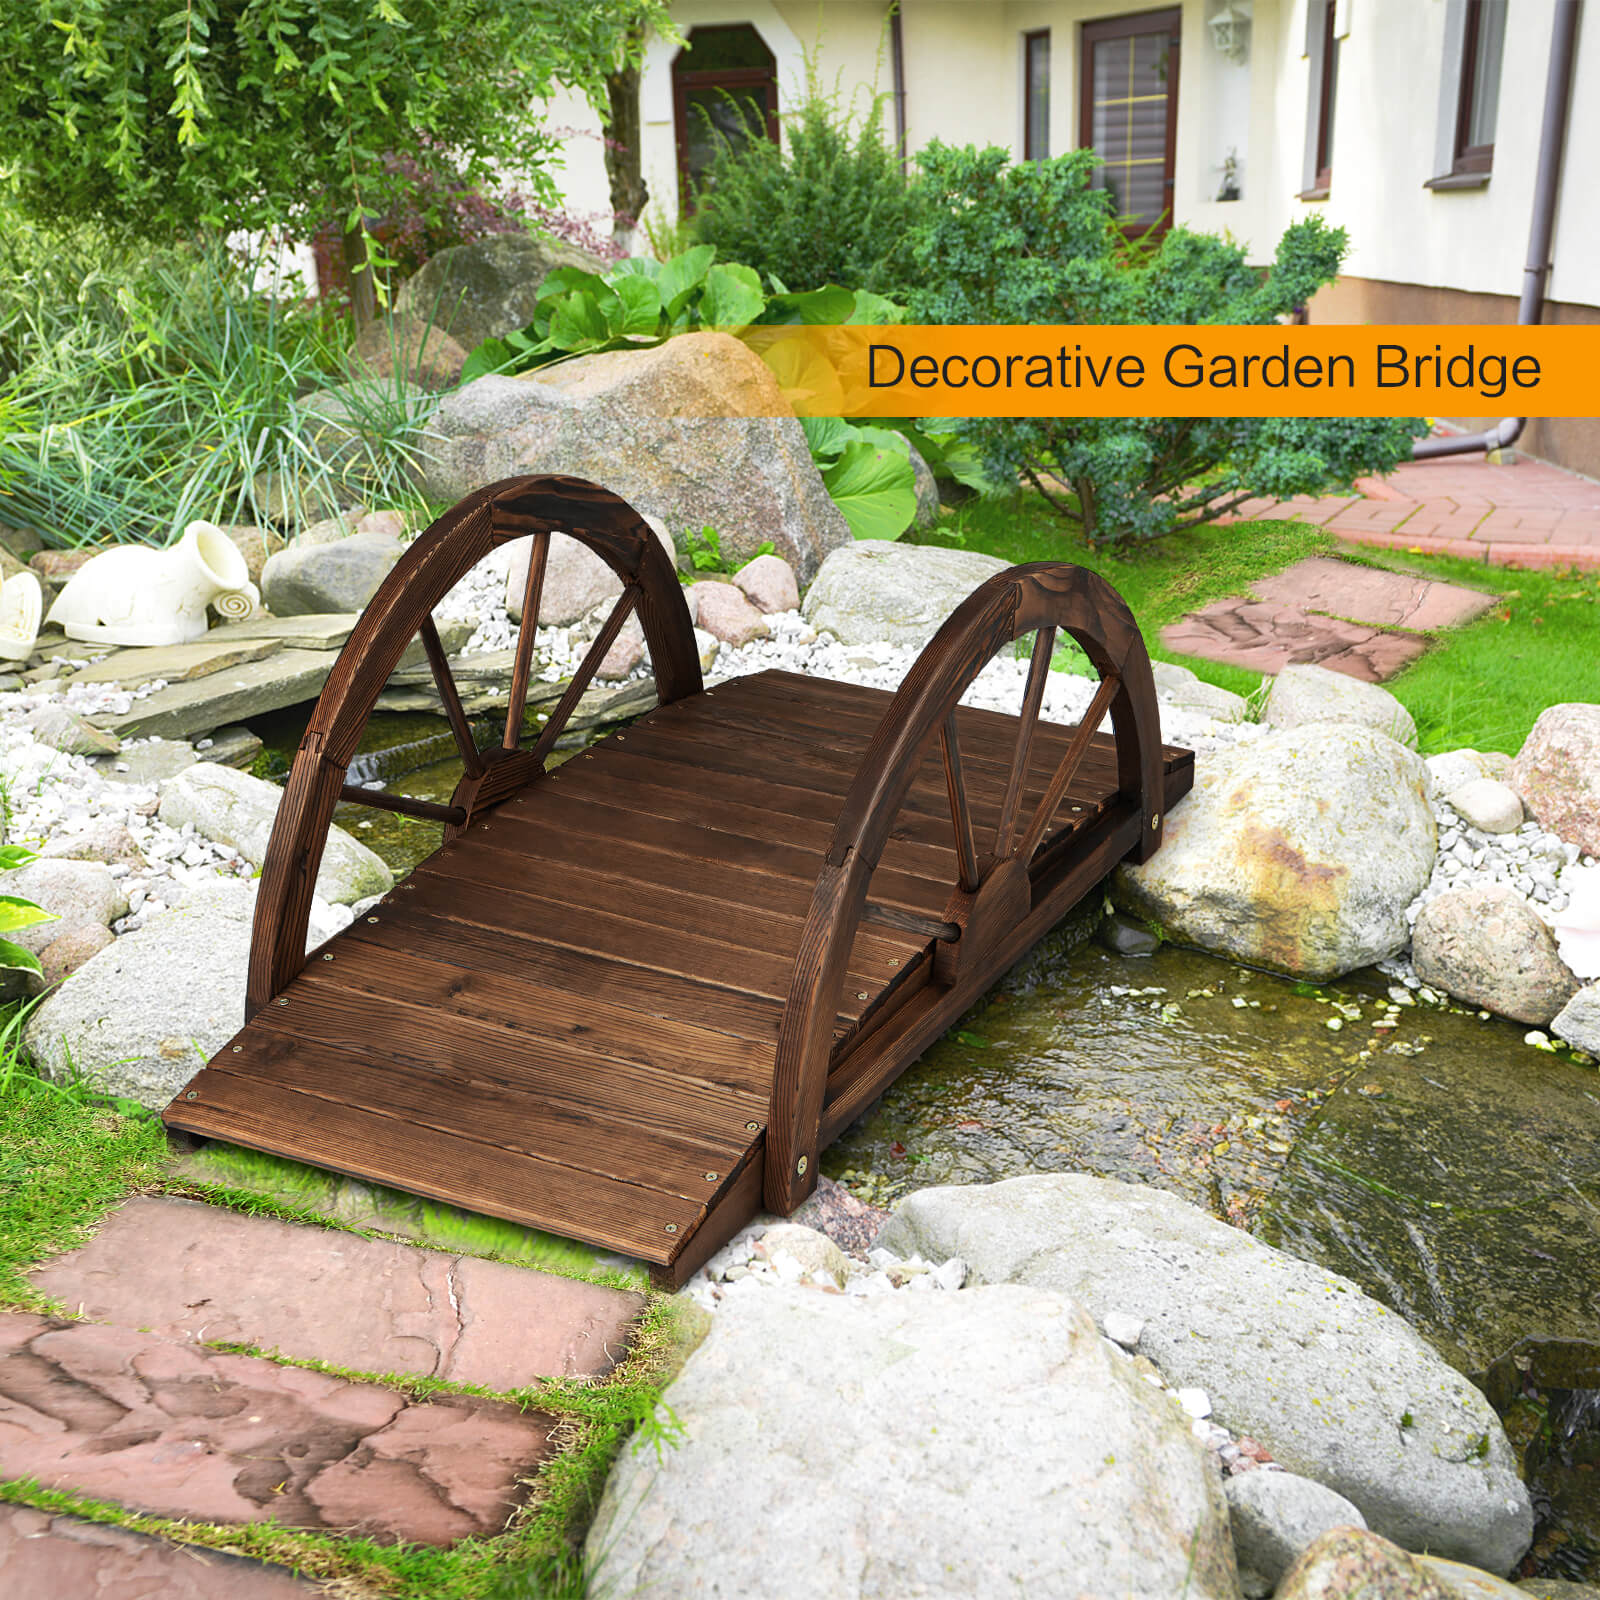 Wooden Garden Bridge with Half Wheel Railings-Rustic Brown